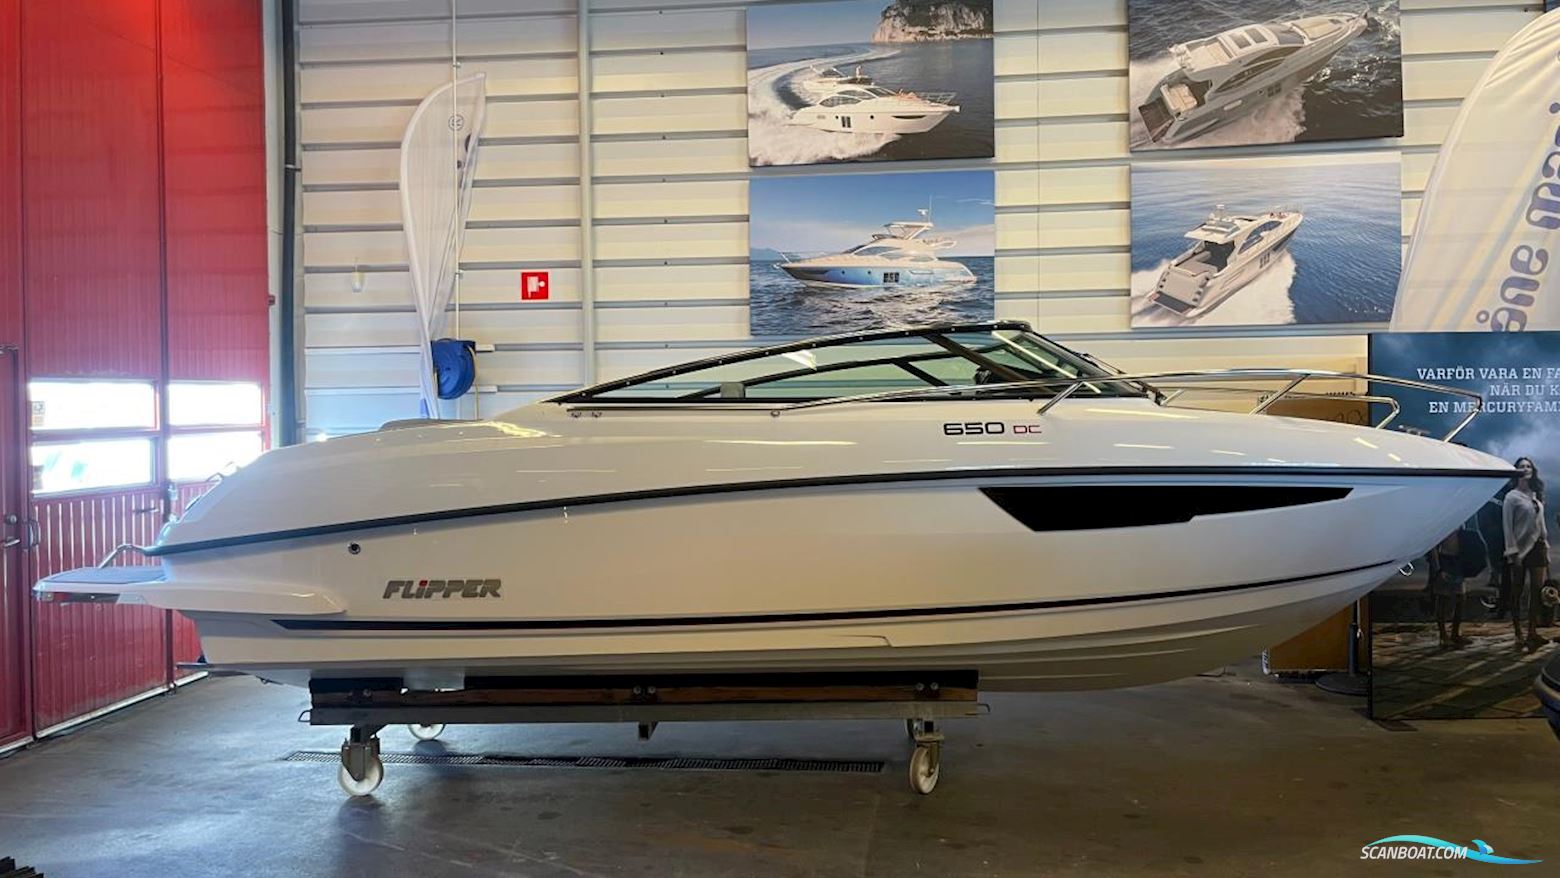 Flipper 650 DC Motorbåd 2023, med Mercury motor, Sverige